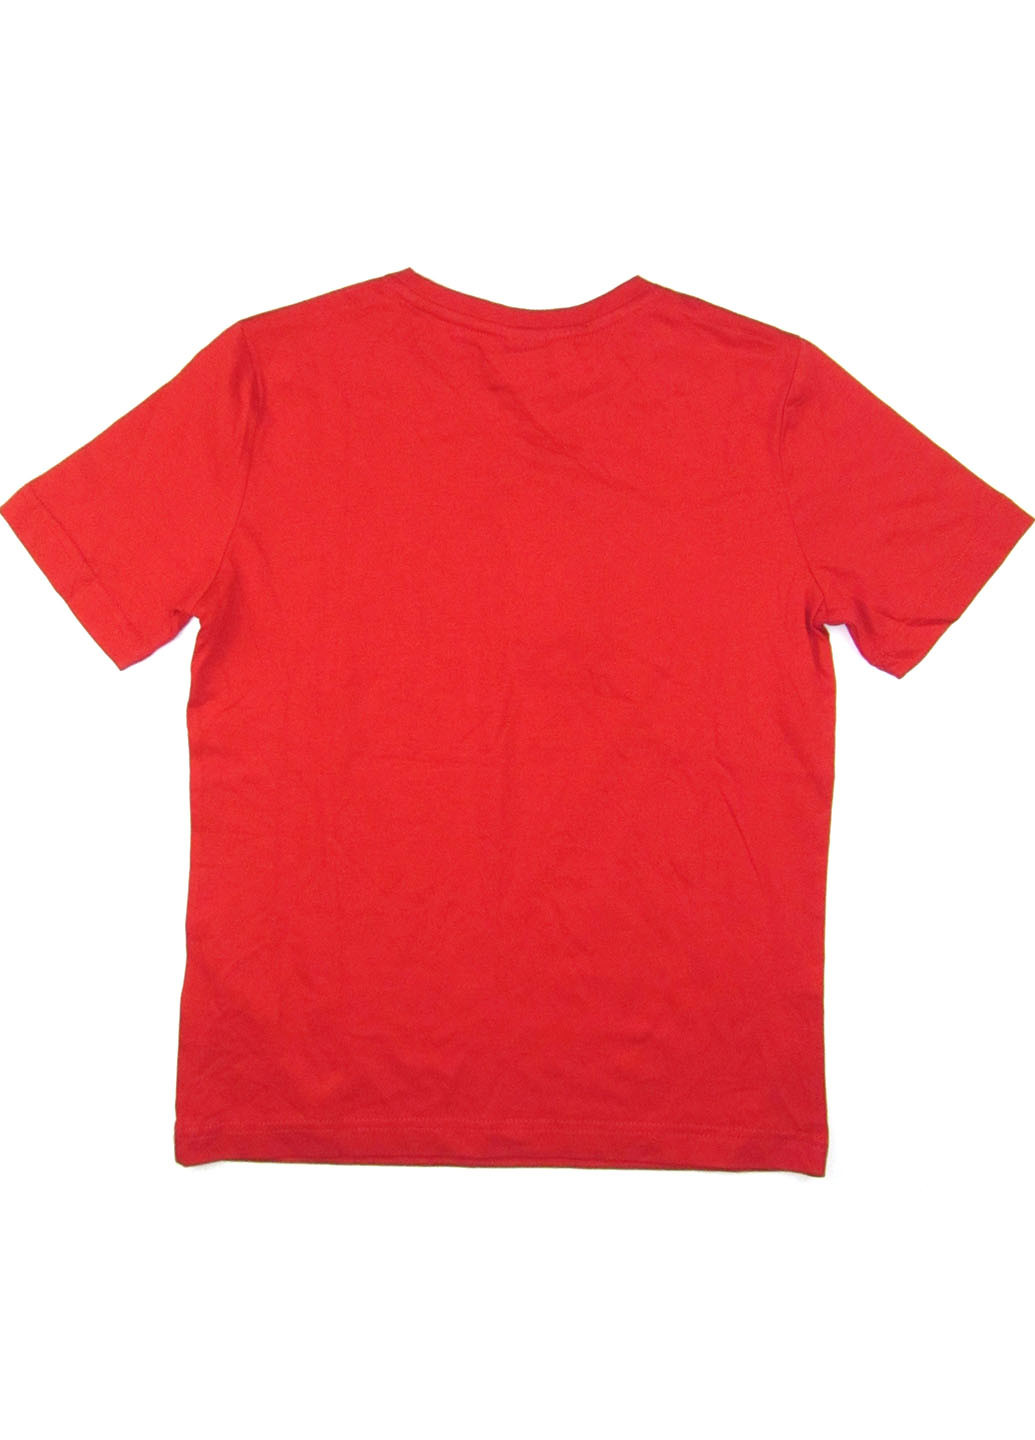 Червона літня футболка S.Oliver